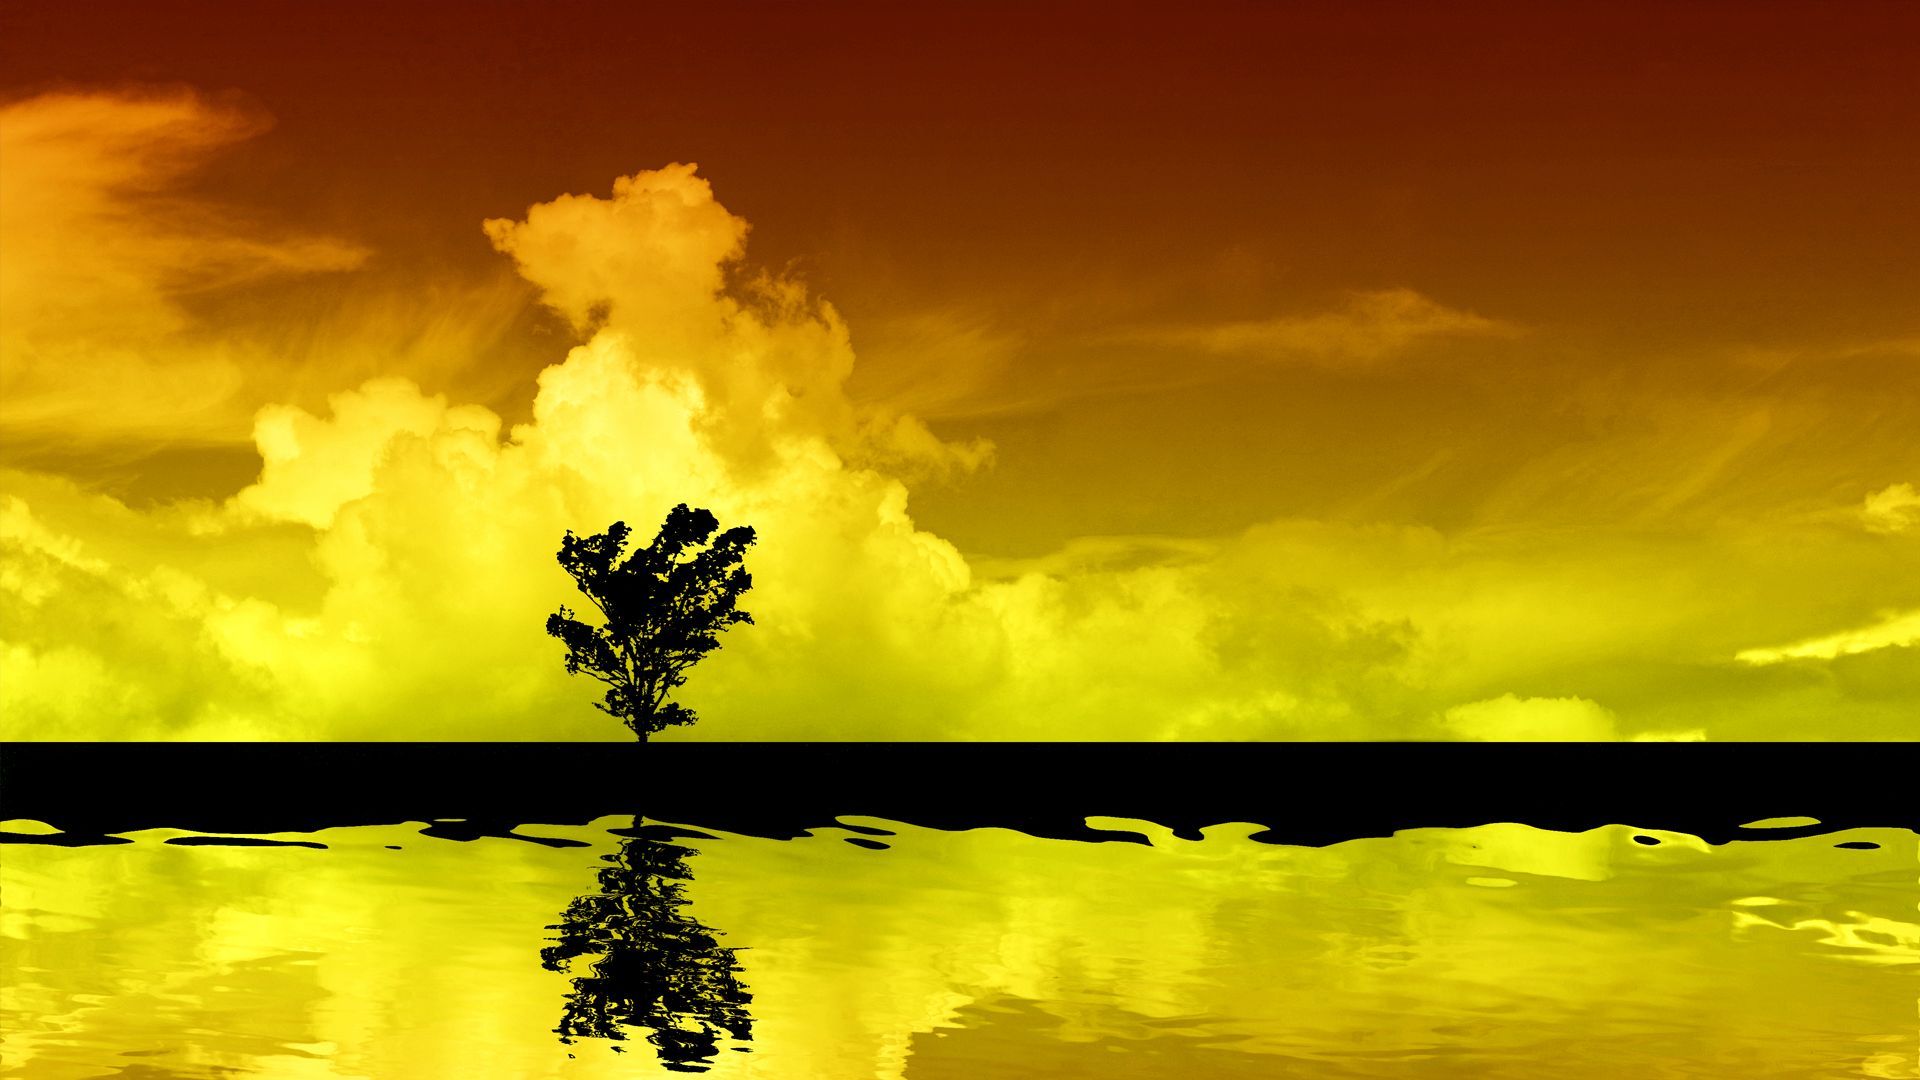 壁紙hd 1080p無料ダウンロード,空,自然の風景,自然,黄,雲